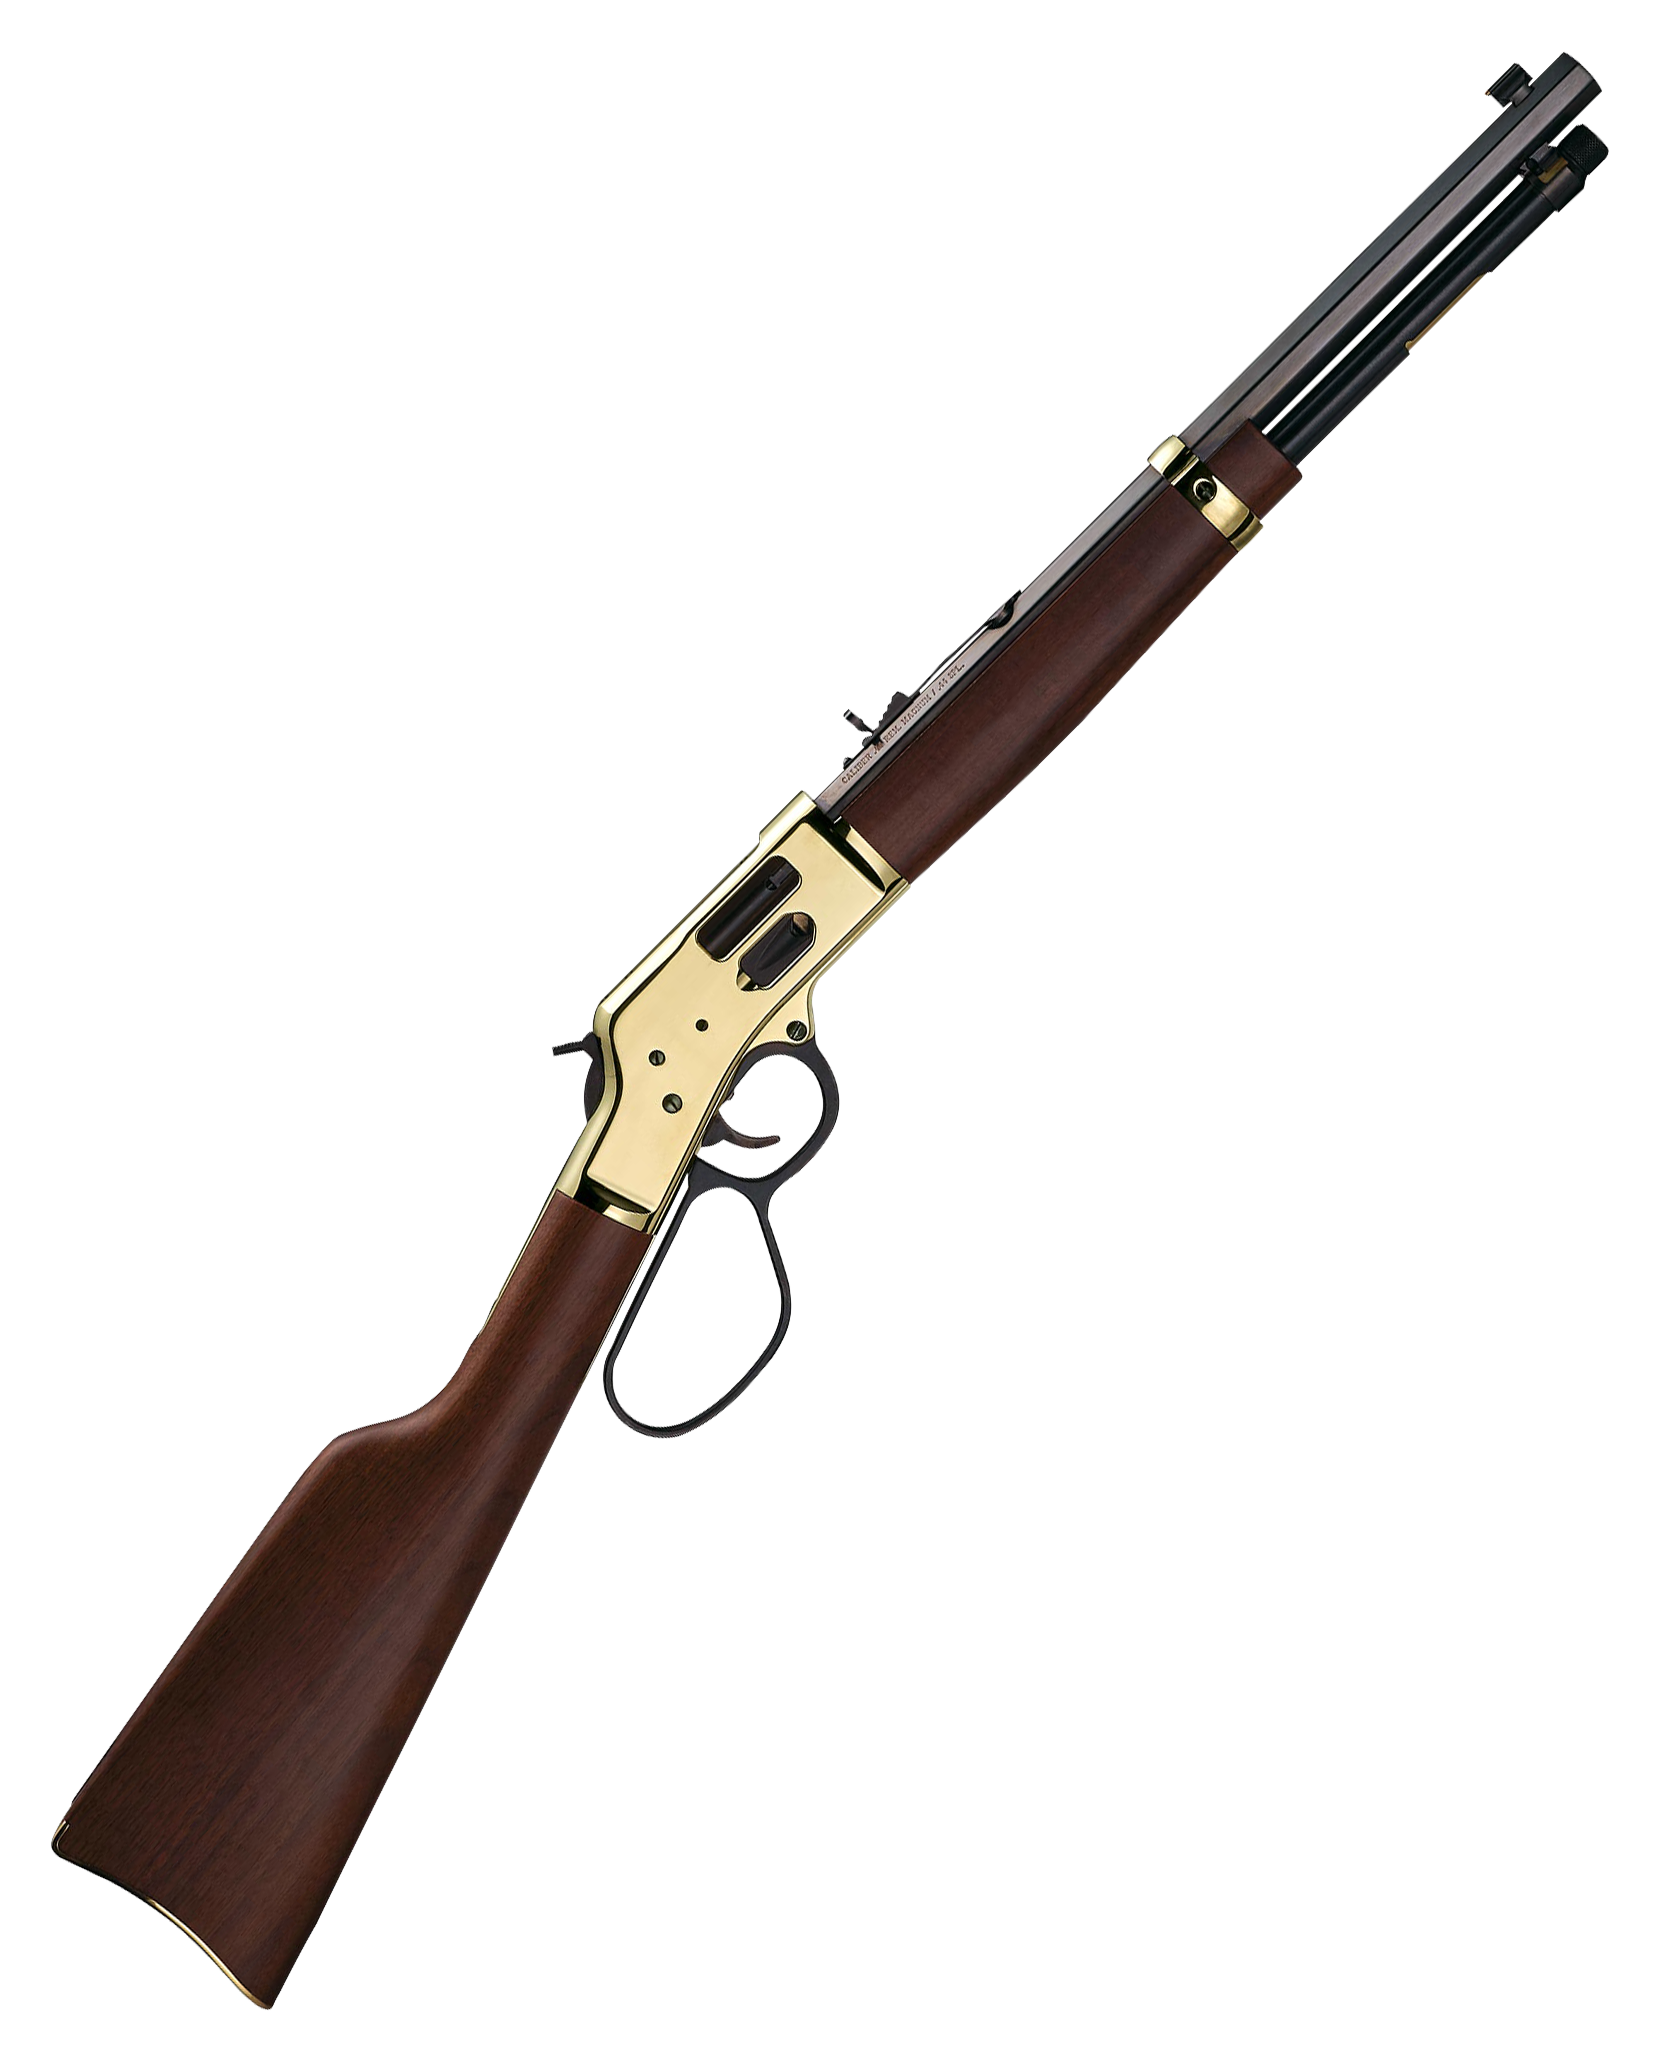 Henry Big Boy Brass Side Gate Carbine Polished Hardened Brass Lever Action Rifle - 44 Magnum - 16.5in - Brown -  H006GR